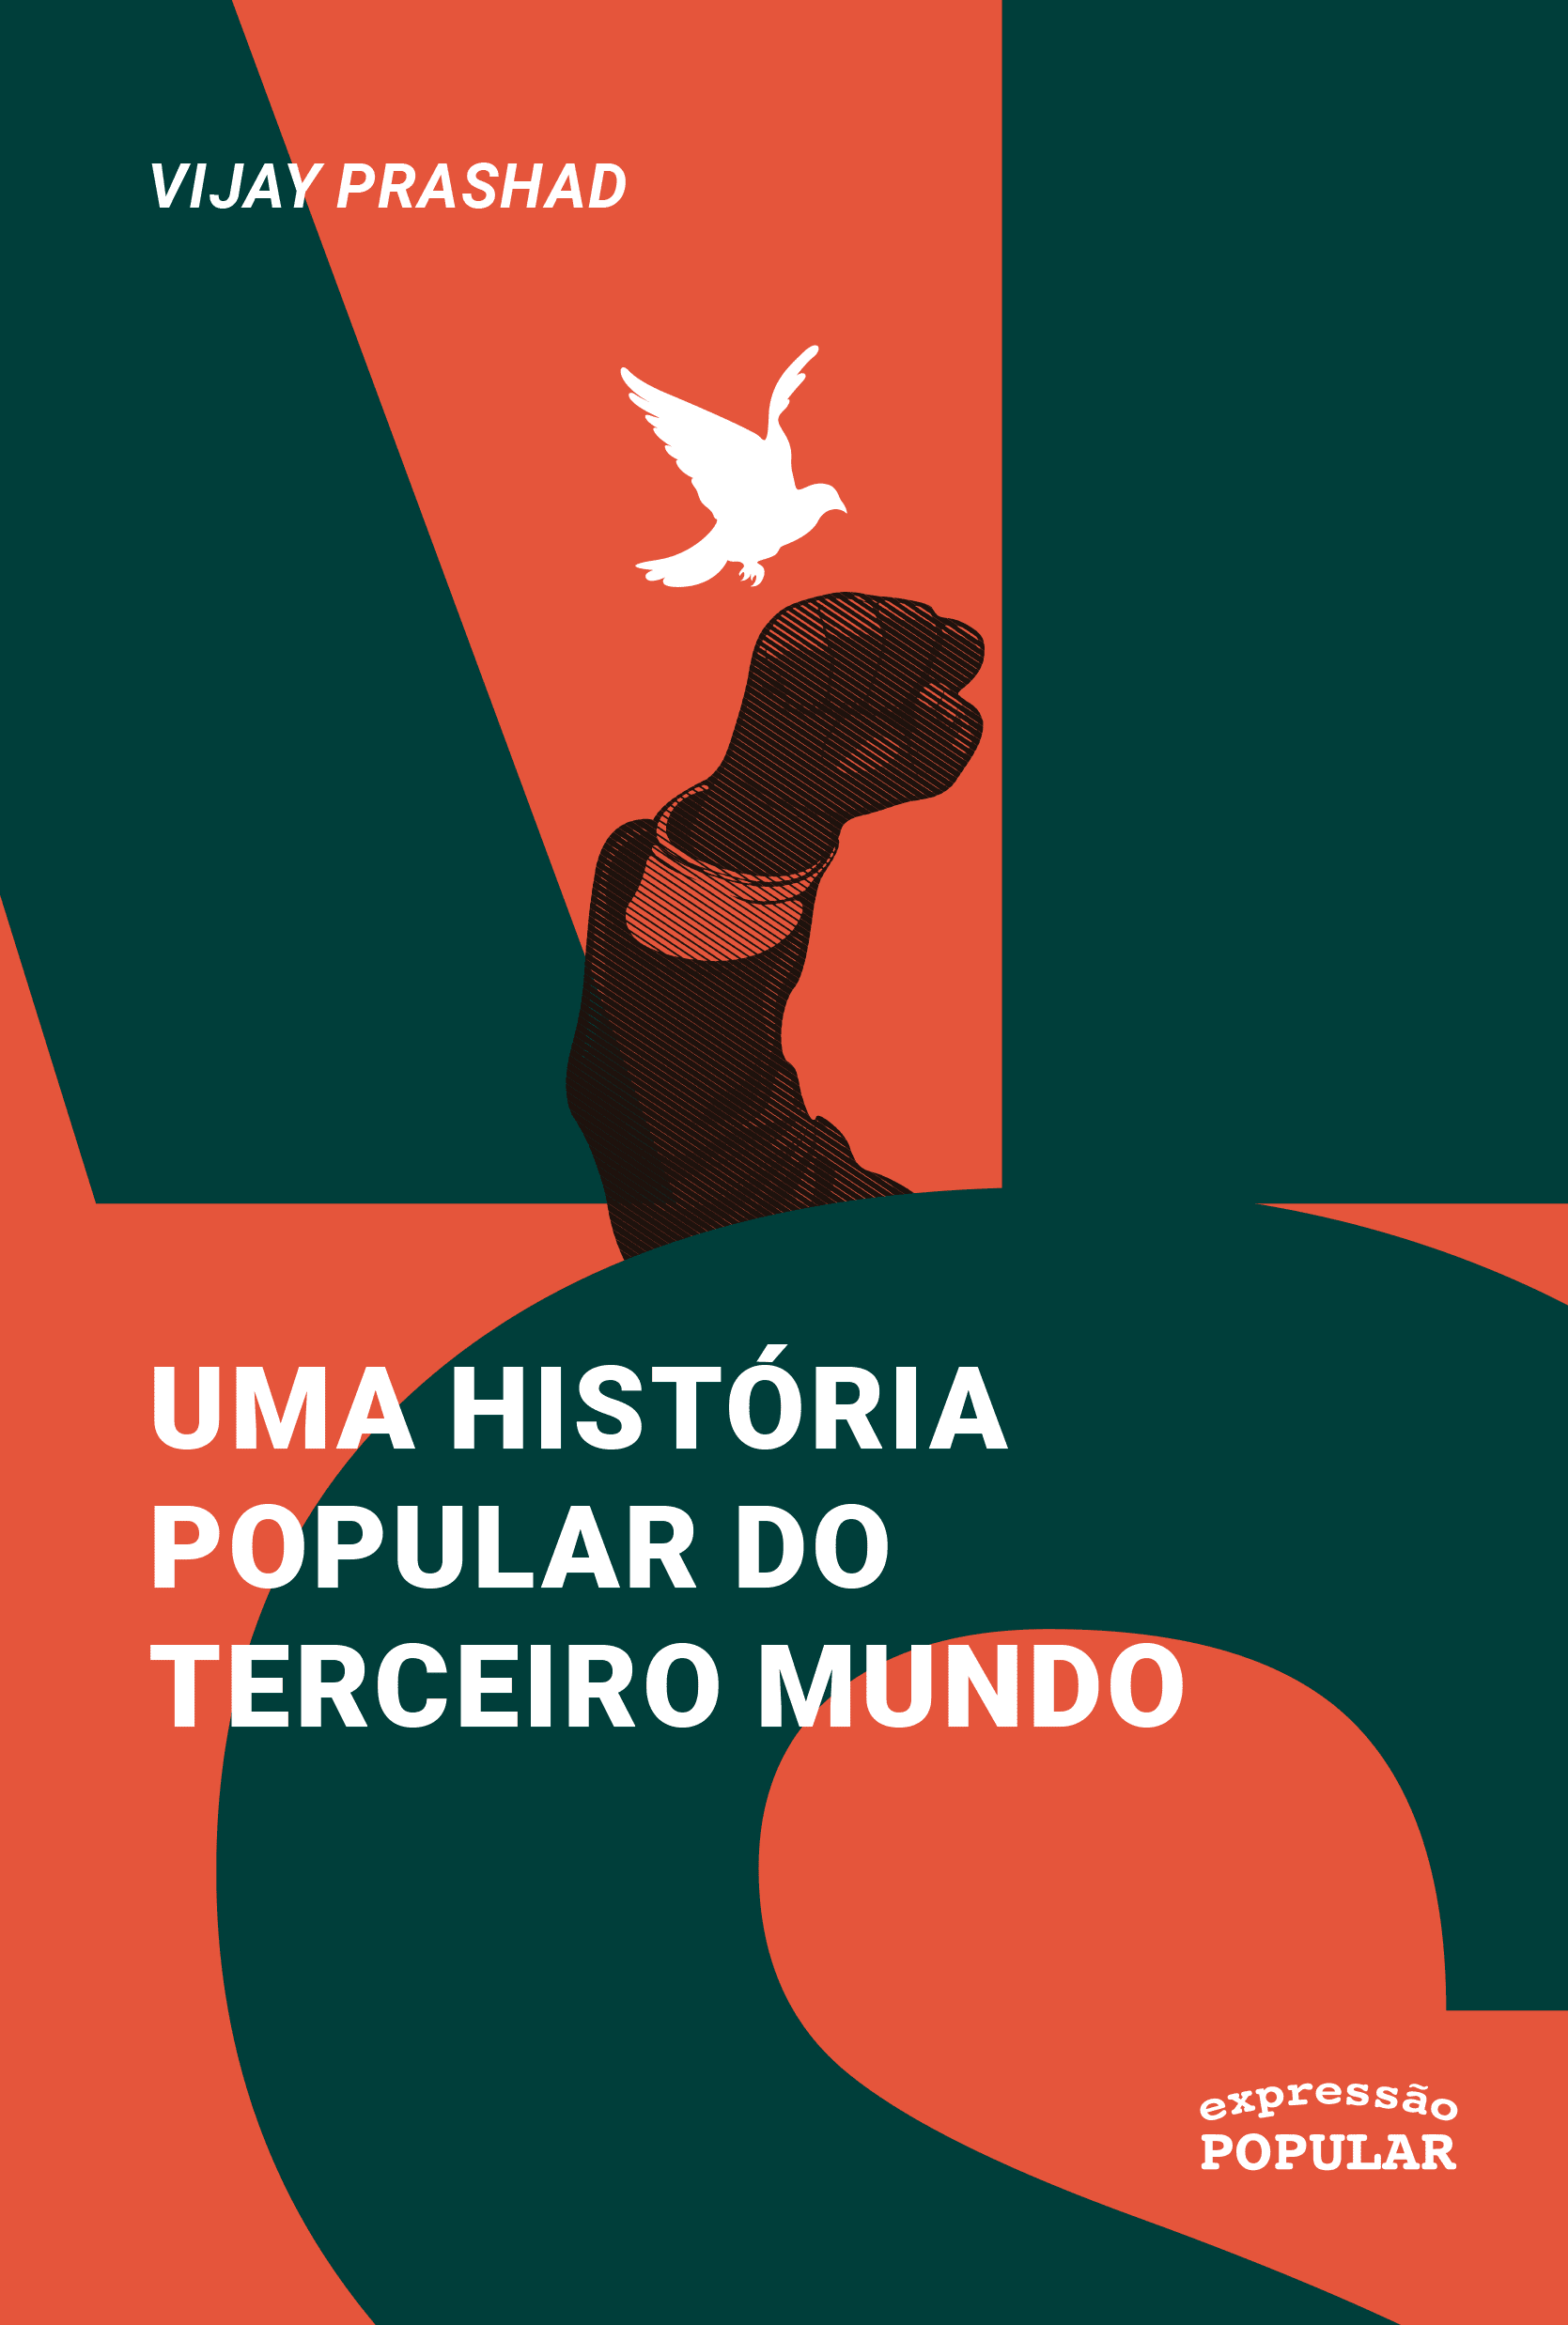 UMA HISTORIA POPULAR DO TERCEIRO MUNDO